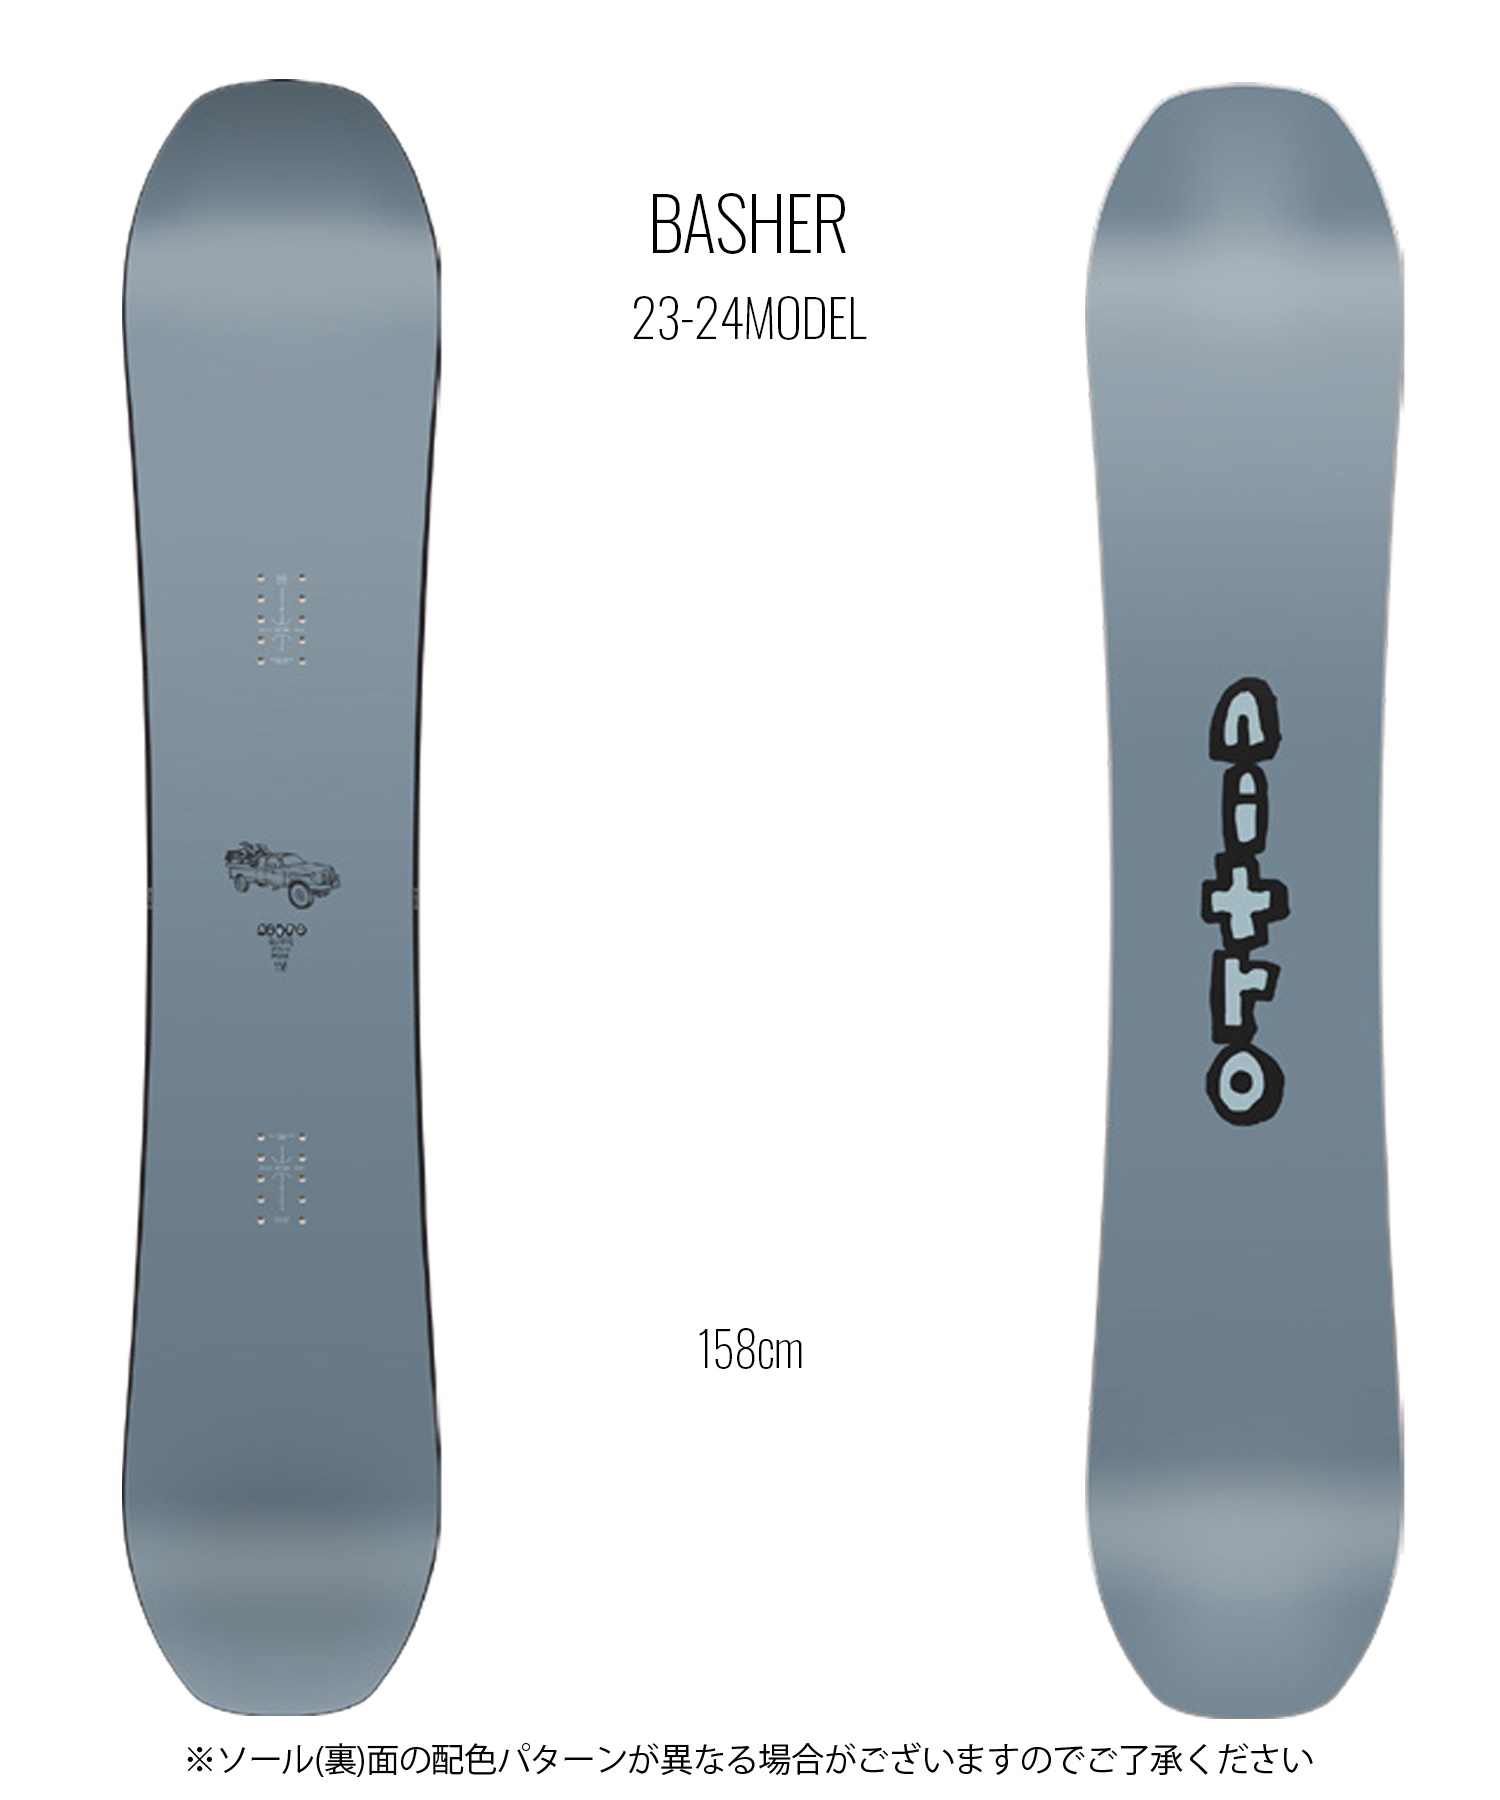 スノーボード 板 メンズ NITRO ナイトロ BASHER 23-24モデル ムラサキスポーツ KK D18(ONECOLOR-158cm)